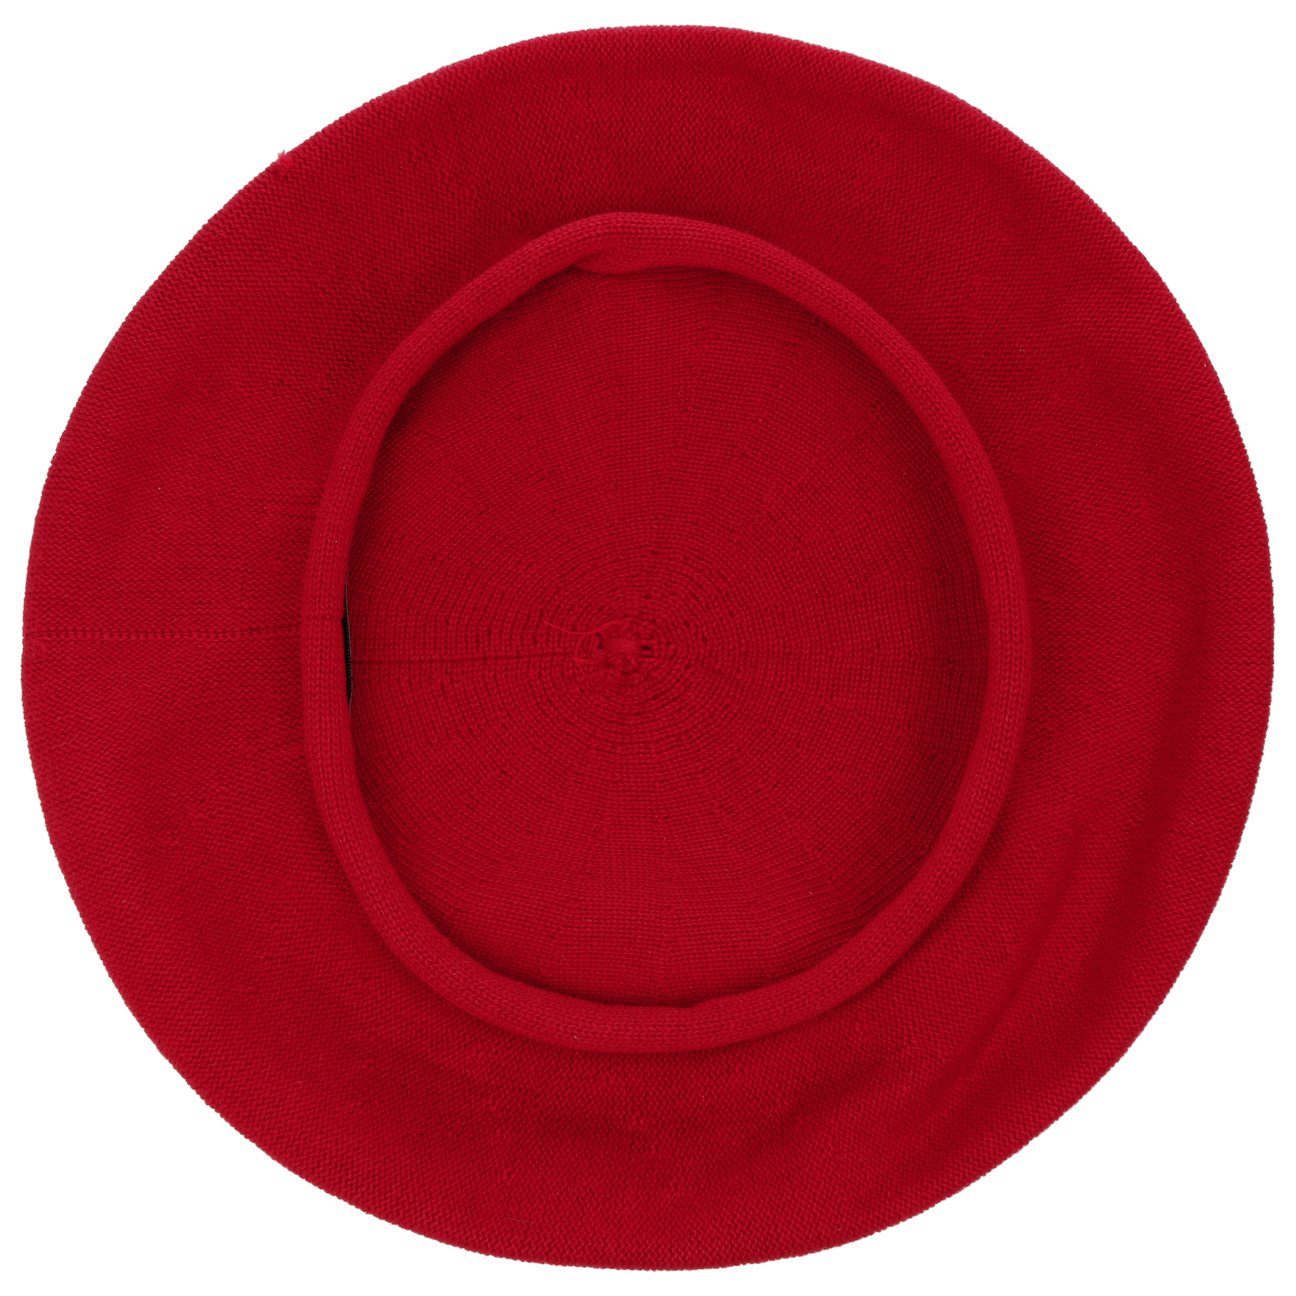 (1-St) rot Barascon Baske Baskenmütze